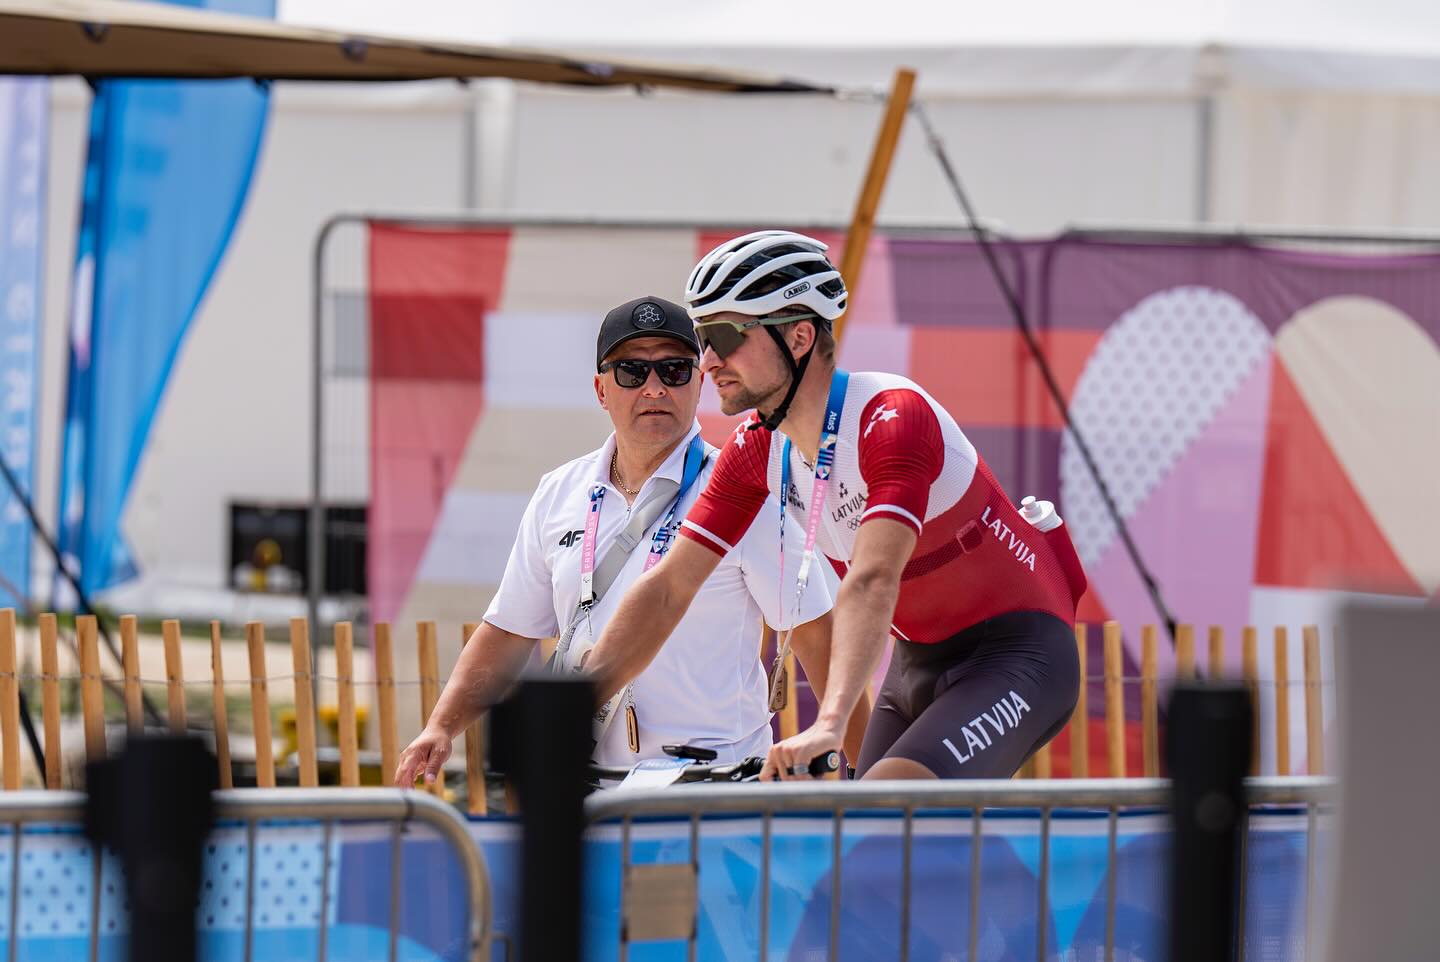 Blūms kā pirmais no sešiem riteņbraucējiem startēs Parīzes Olimpiskajās spēlēs